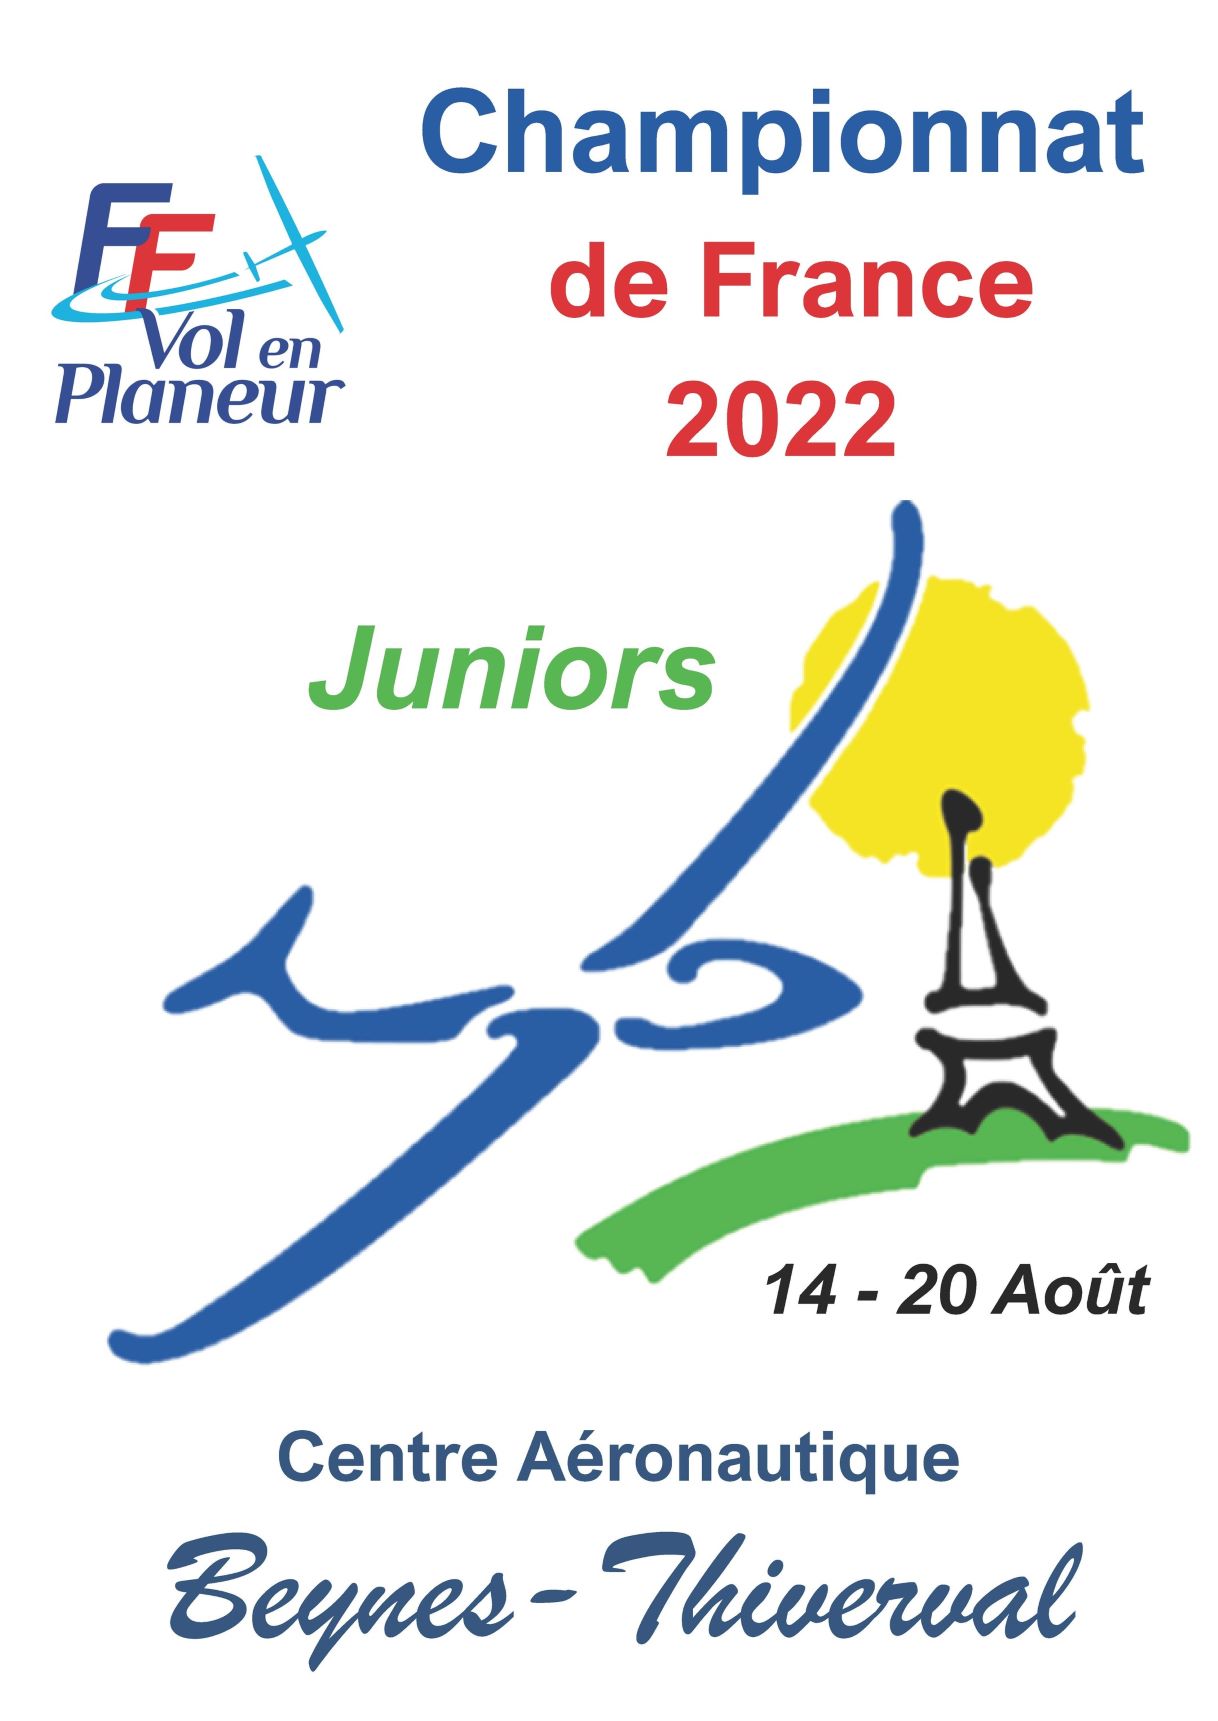 Championnat de France de Vol en Planeur Junior